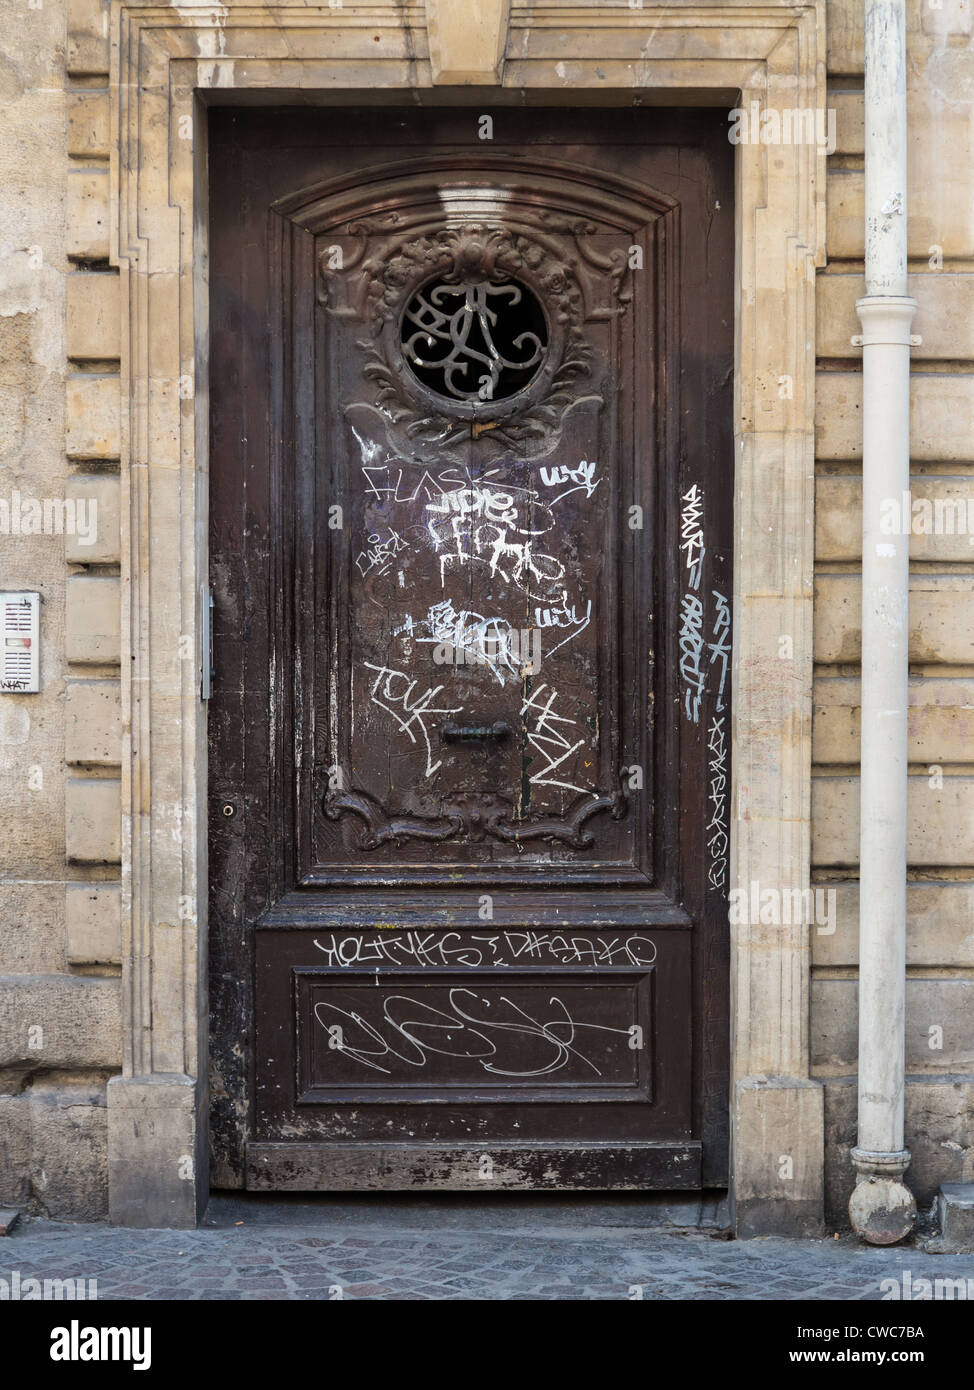 Una puerta en el interior de la ciudad de París, dañados por el vandalismo de grafito Foto de stock